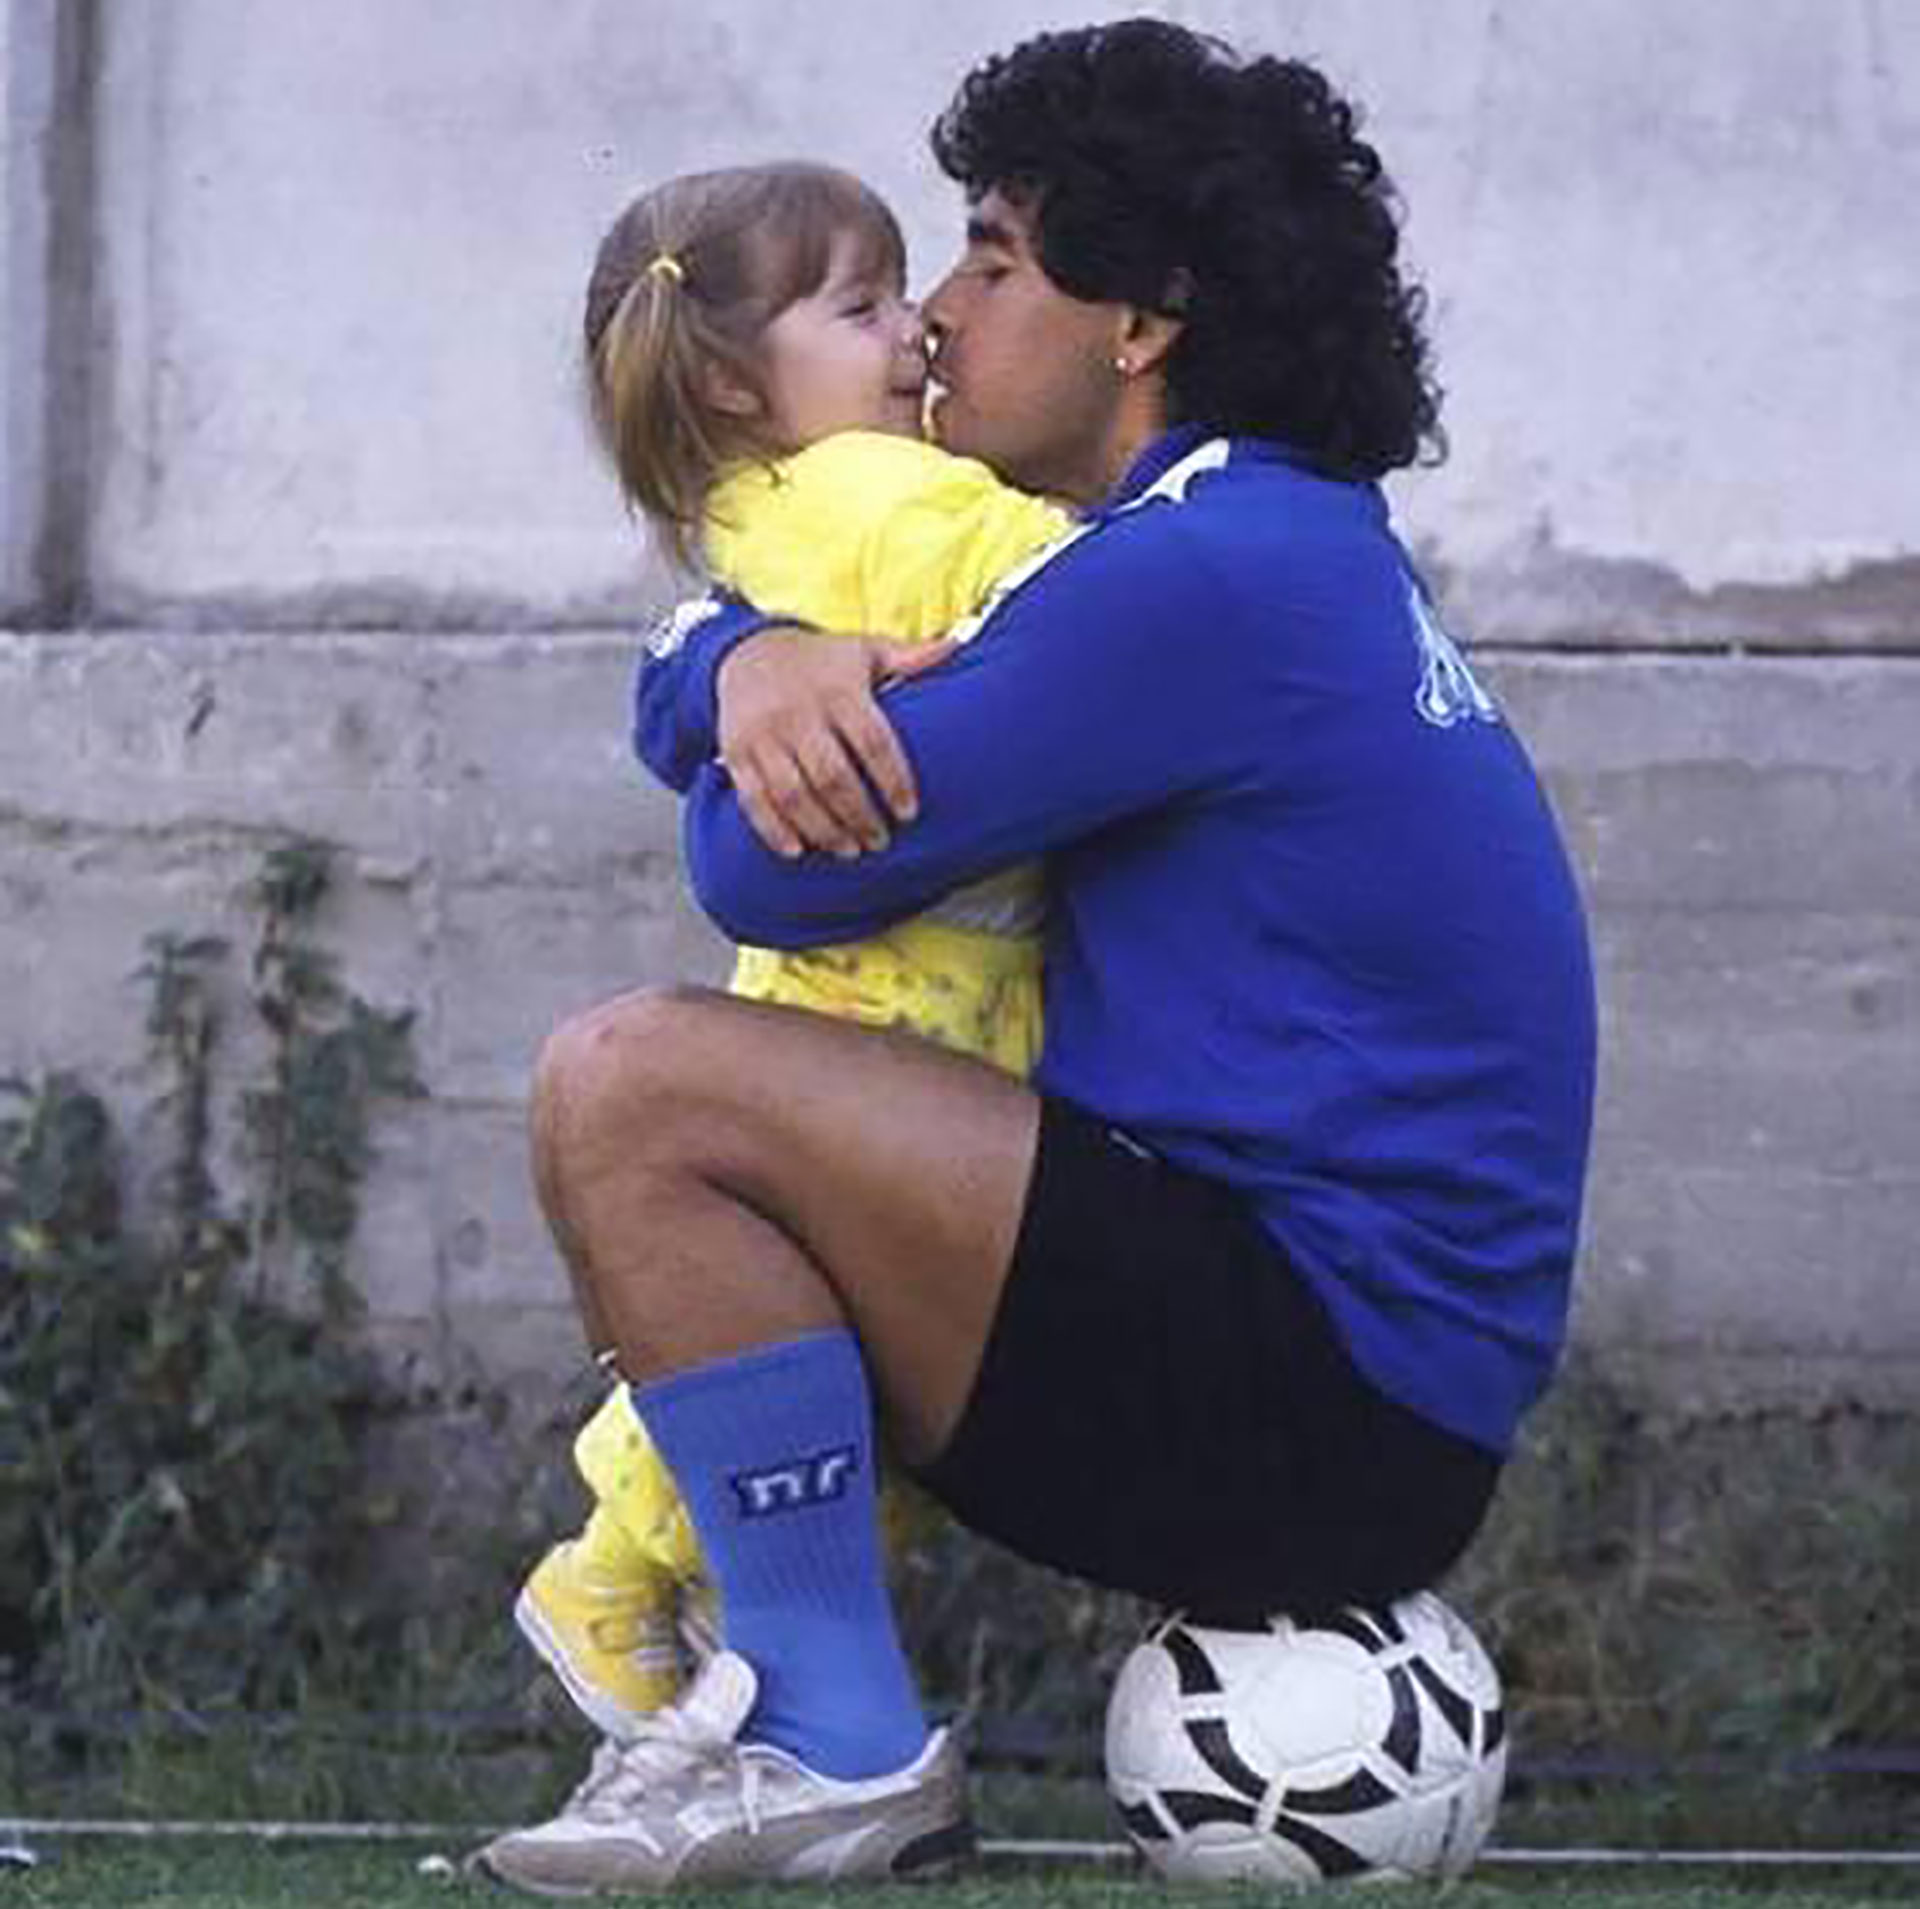 La tierna postal de la infancia de Dalma Maradona junto a su padre, que la actriz compartió en sus redes un tiempo atrás